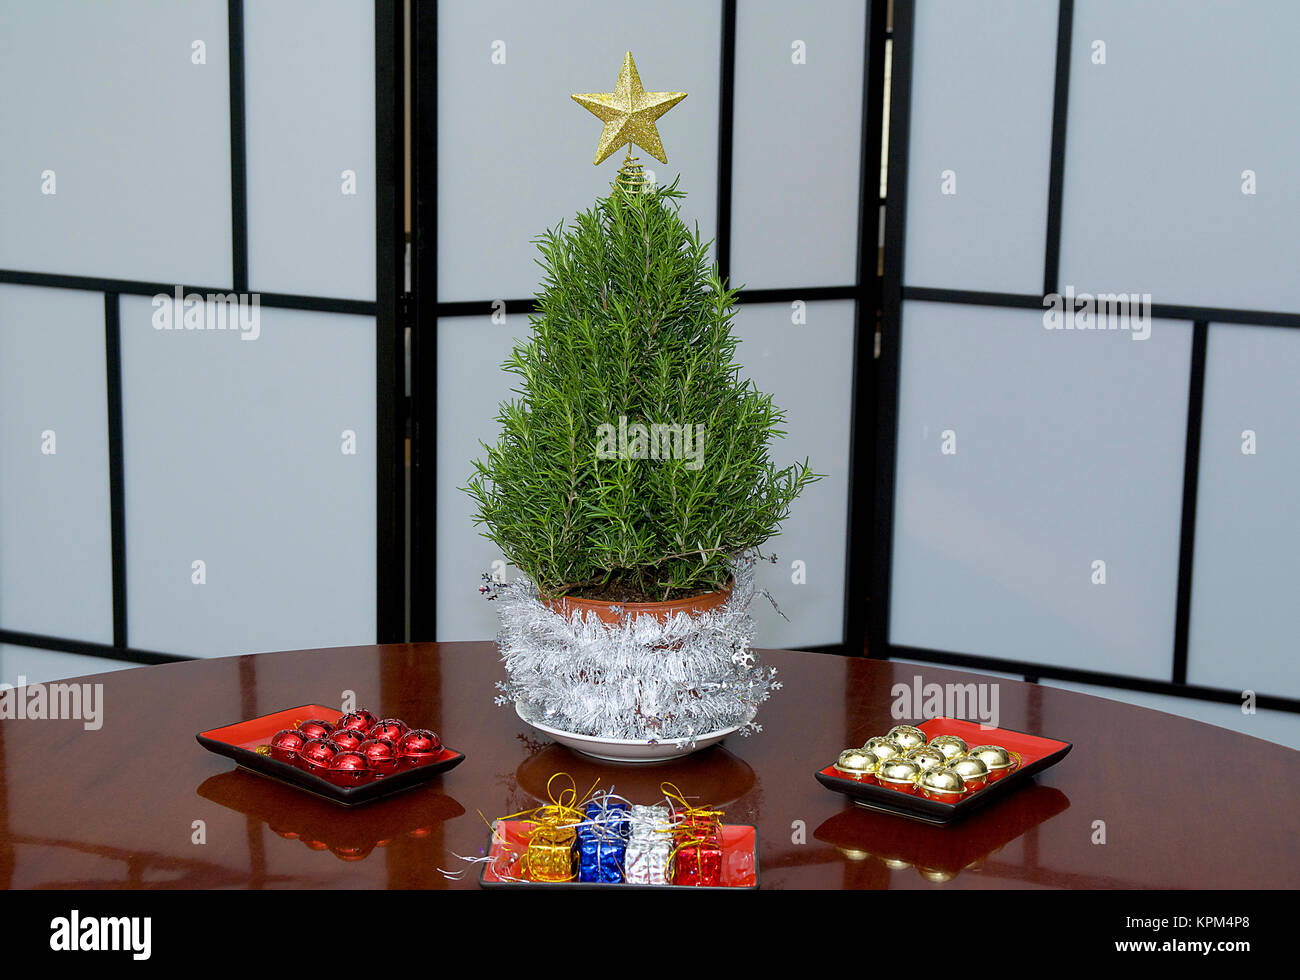 Rosemary Mini Arbre de Noël prêts pour décorations colorées en studio avec une étoile d'or et de stores à carreaux Banque D'Images